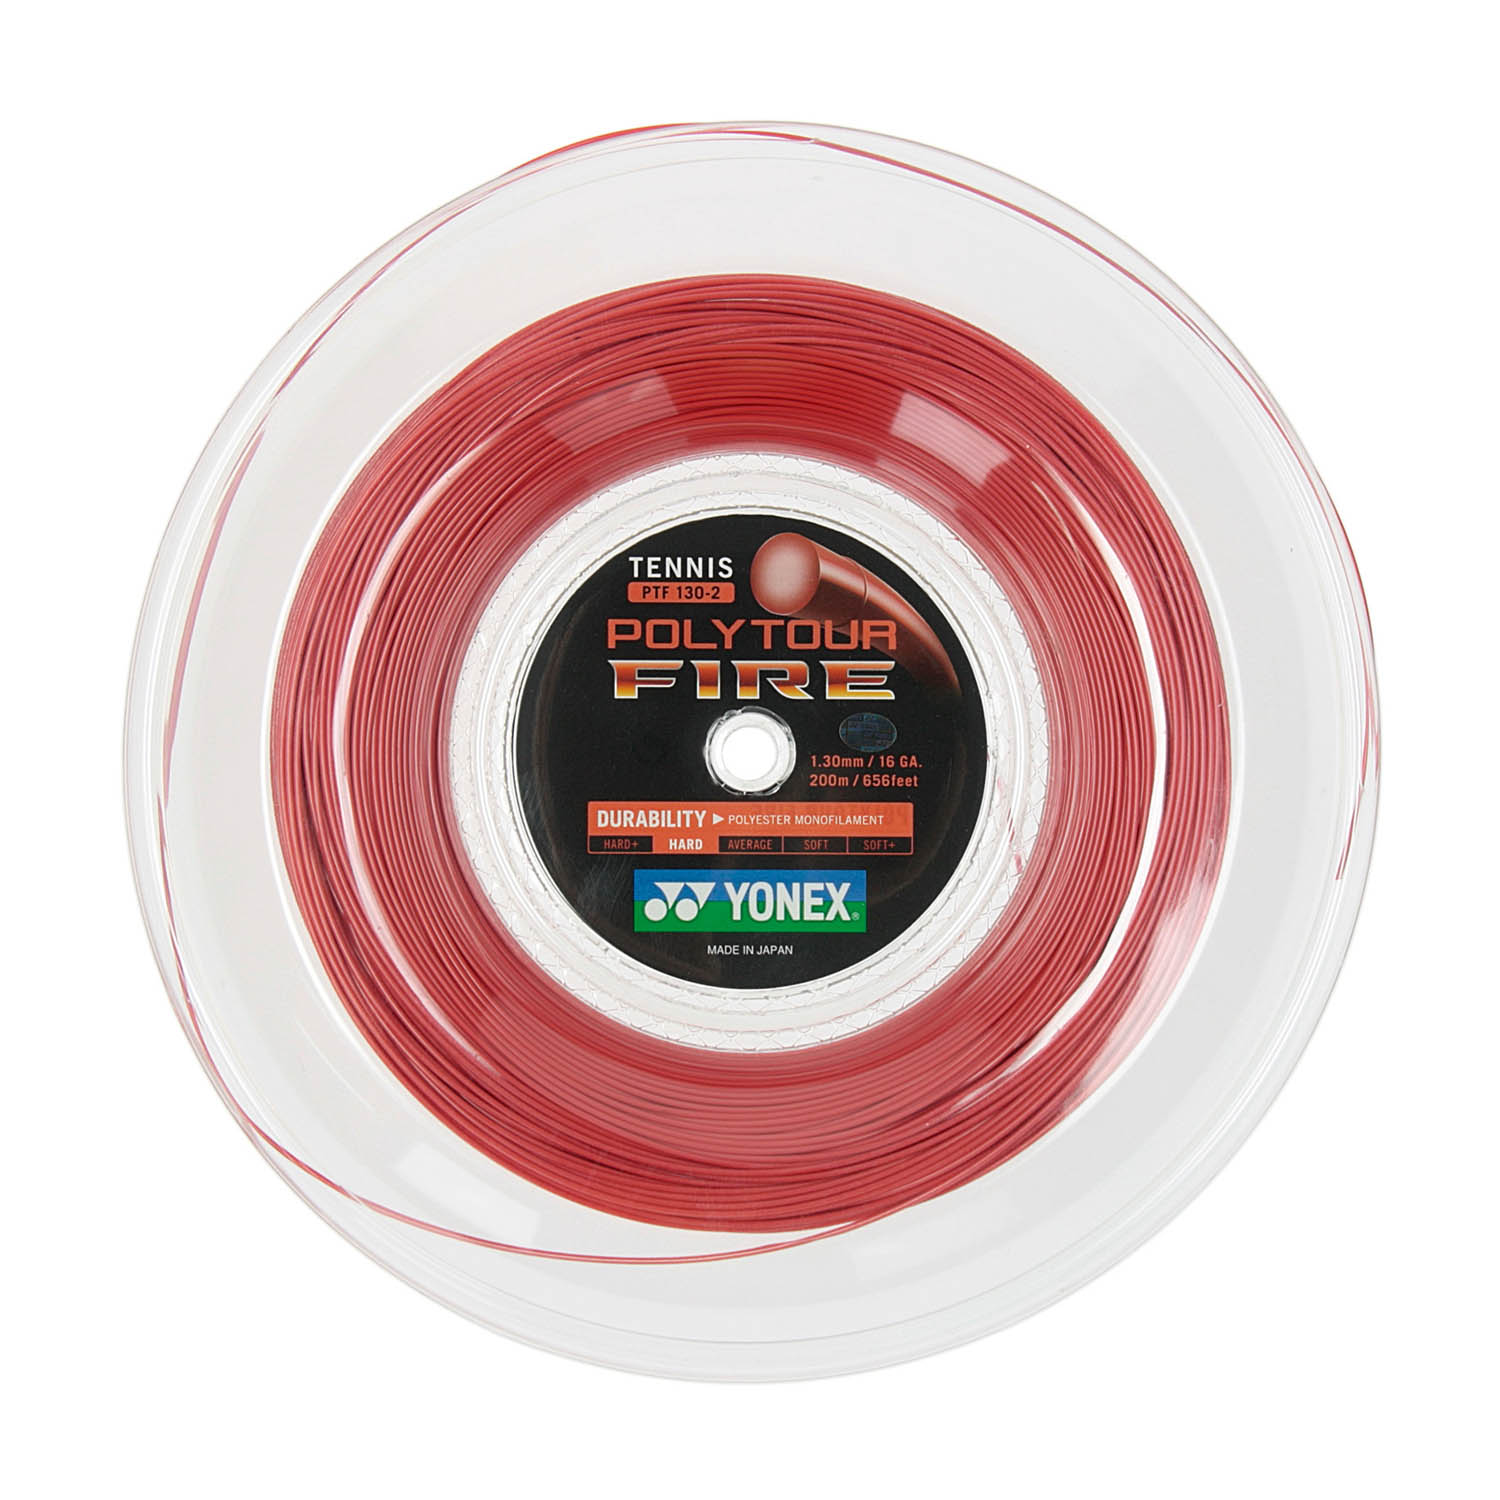 Yonex PolyTour Fire 1.30 200 m Reel - Red